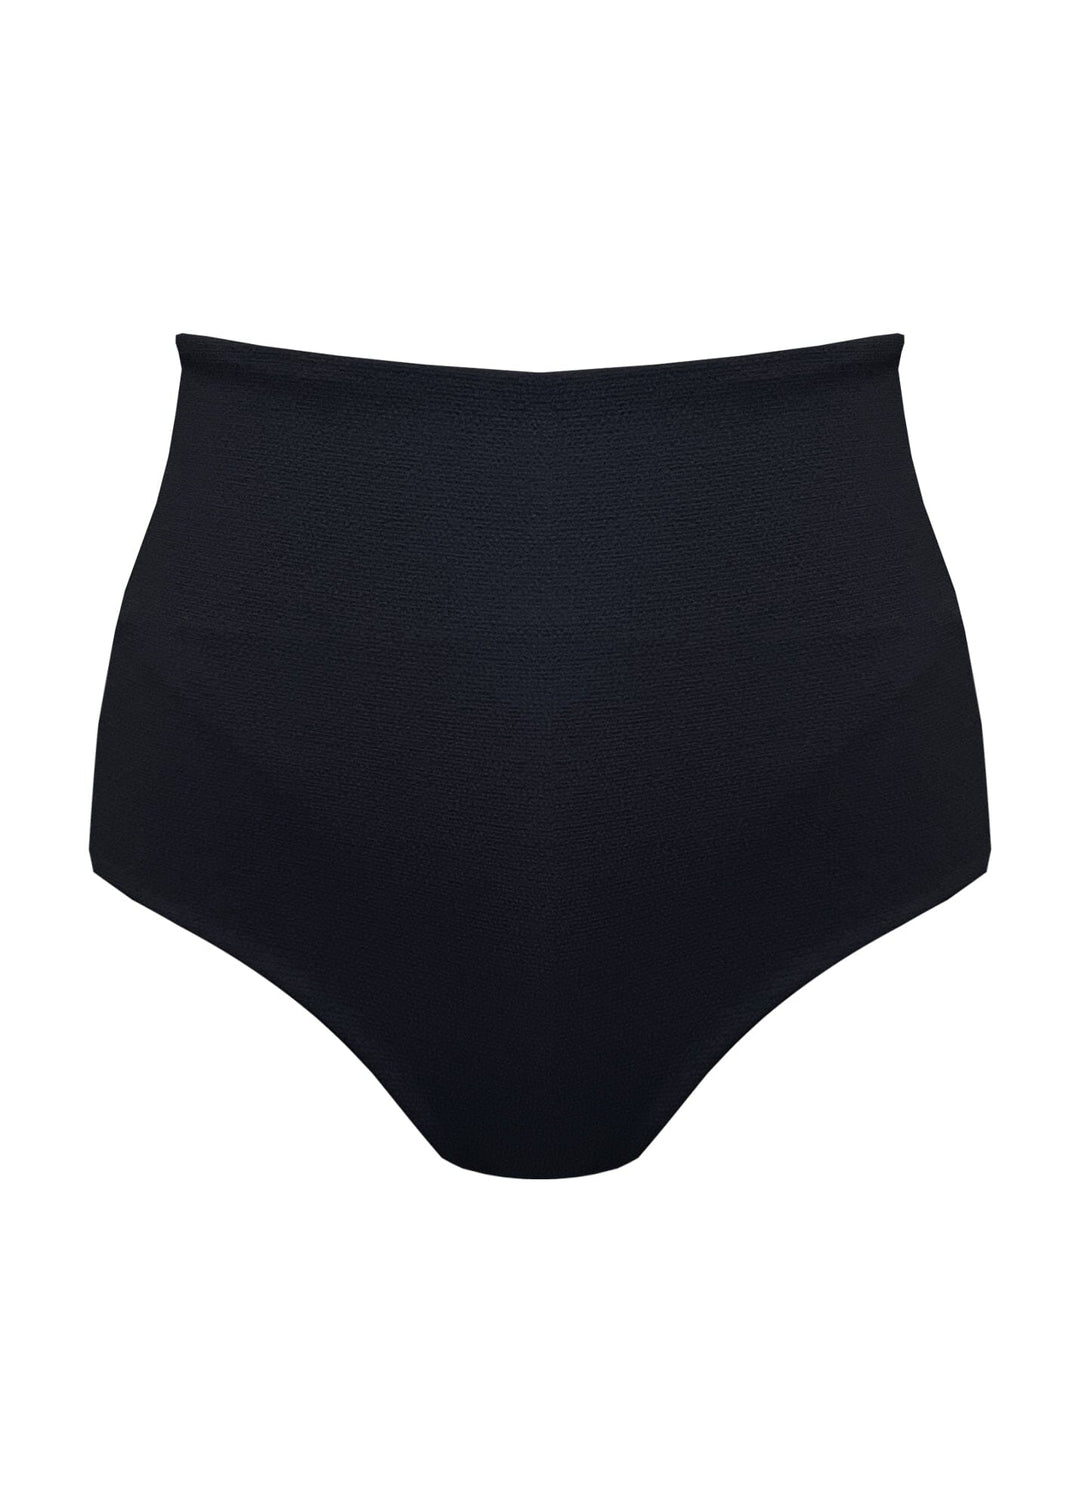 Chelsea Bottom - Black Sand Bottom Naked Swimwear XS 